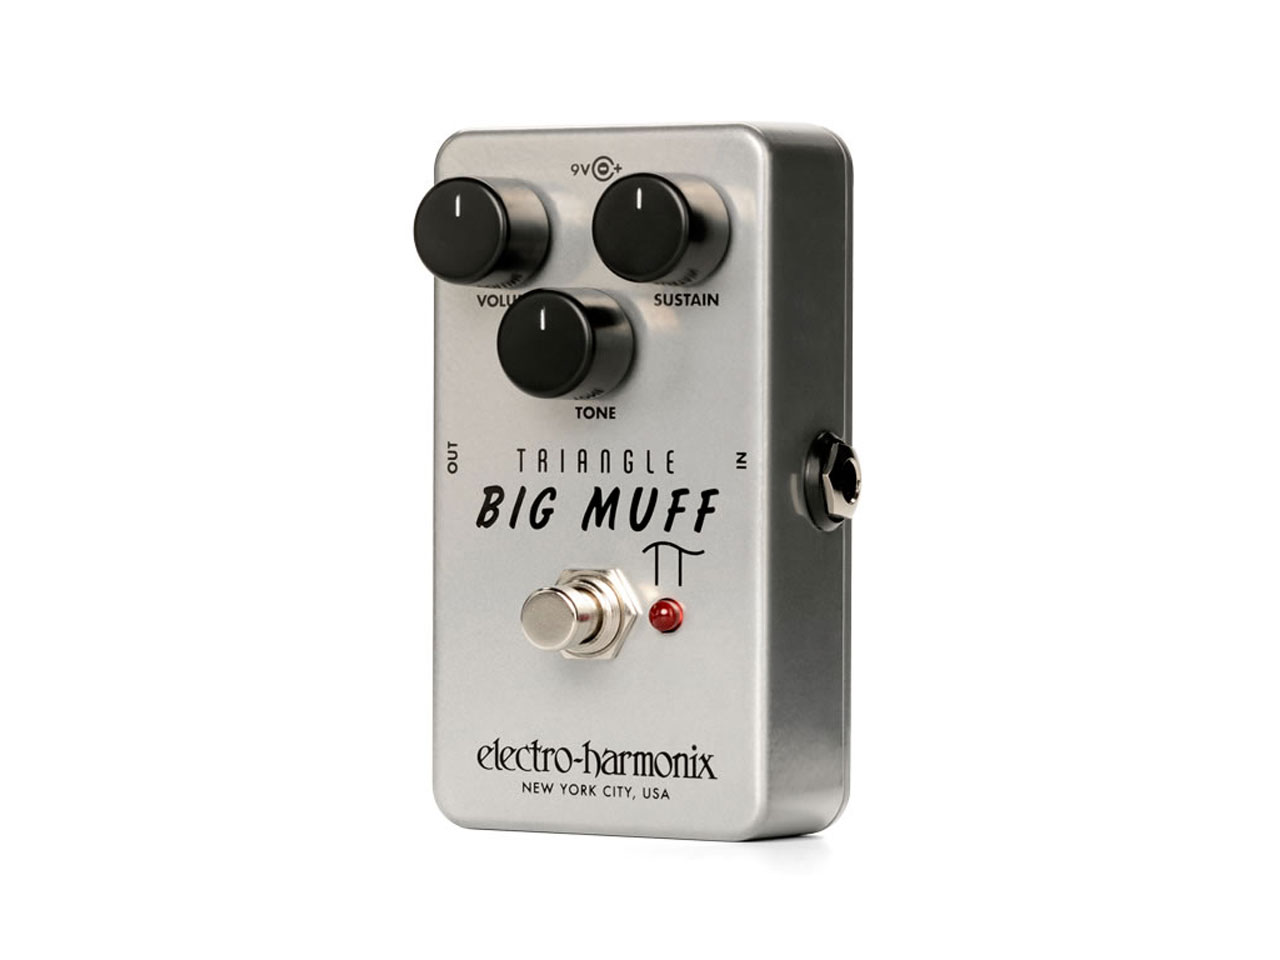 Electro-Harmonix Big Muff Pi Fuzz